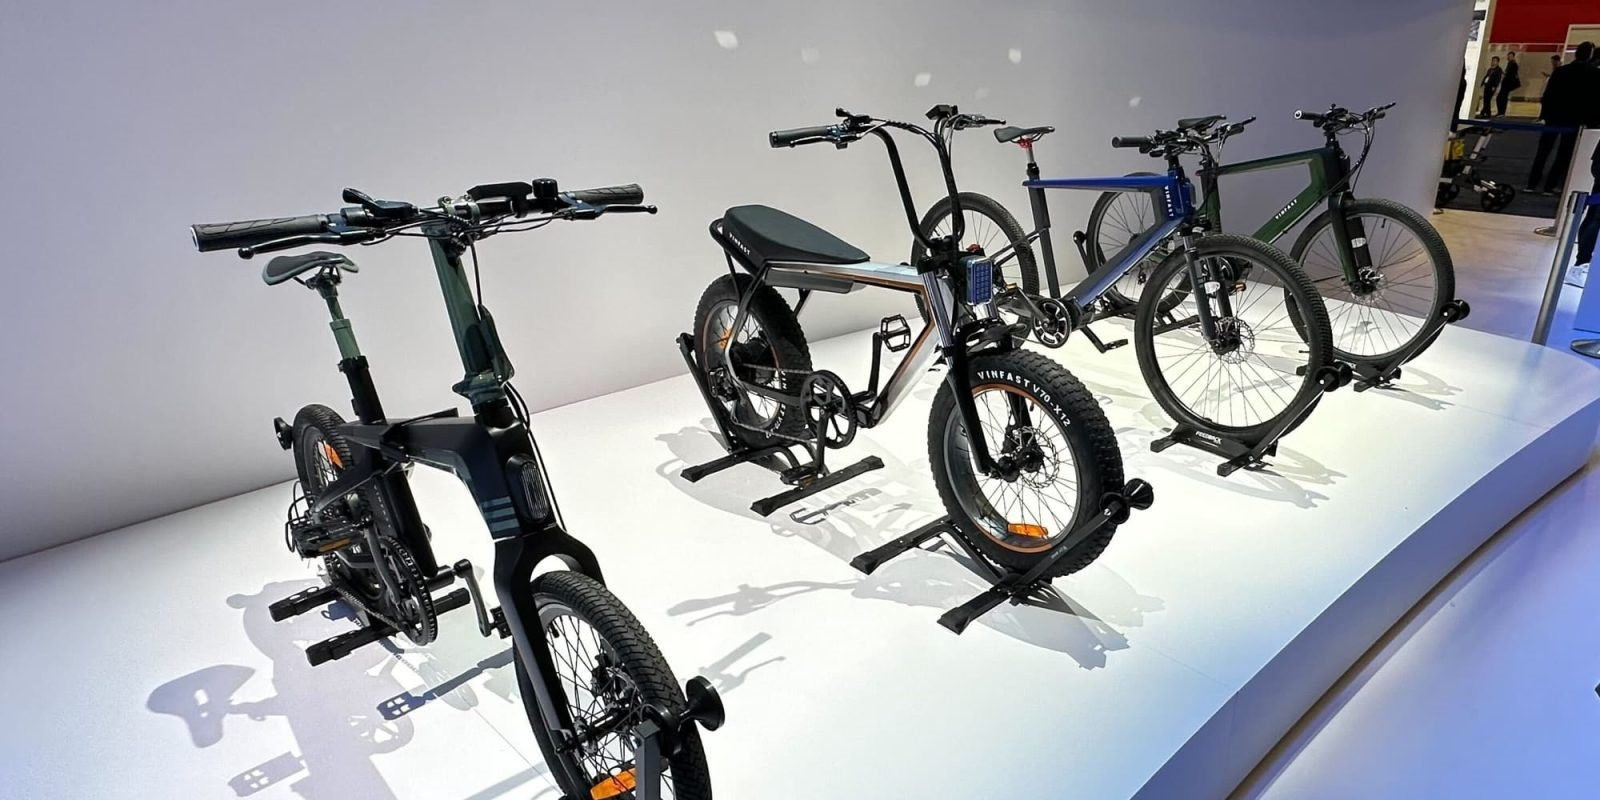 VinFast đăng ký bảo hộ kiểu dáng cho 3 mẫu xe đạp điện, ngày bán ra thị trường đang tới gần - Ảnh 7.